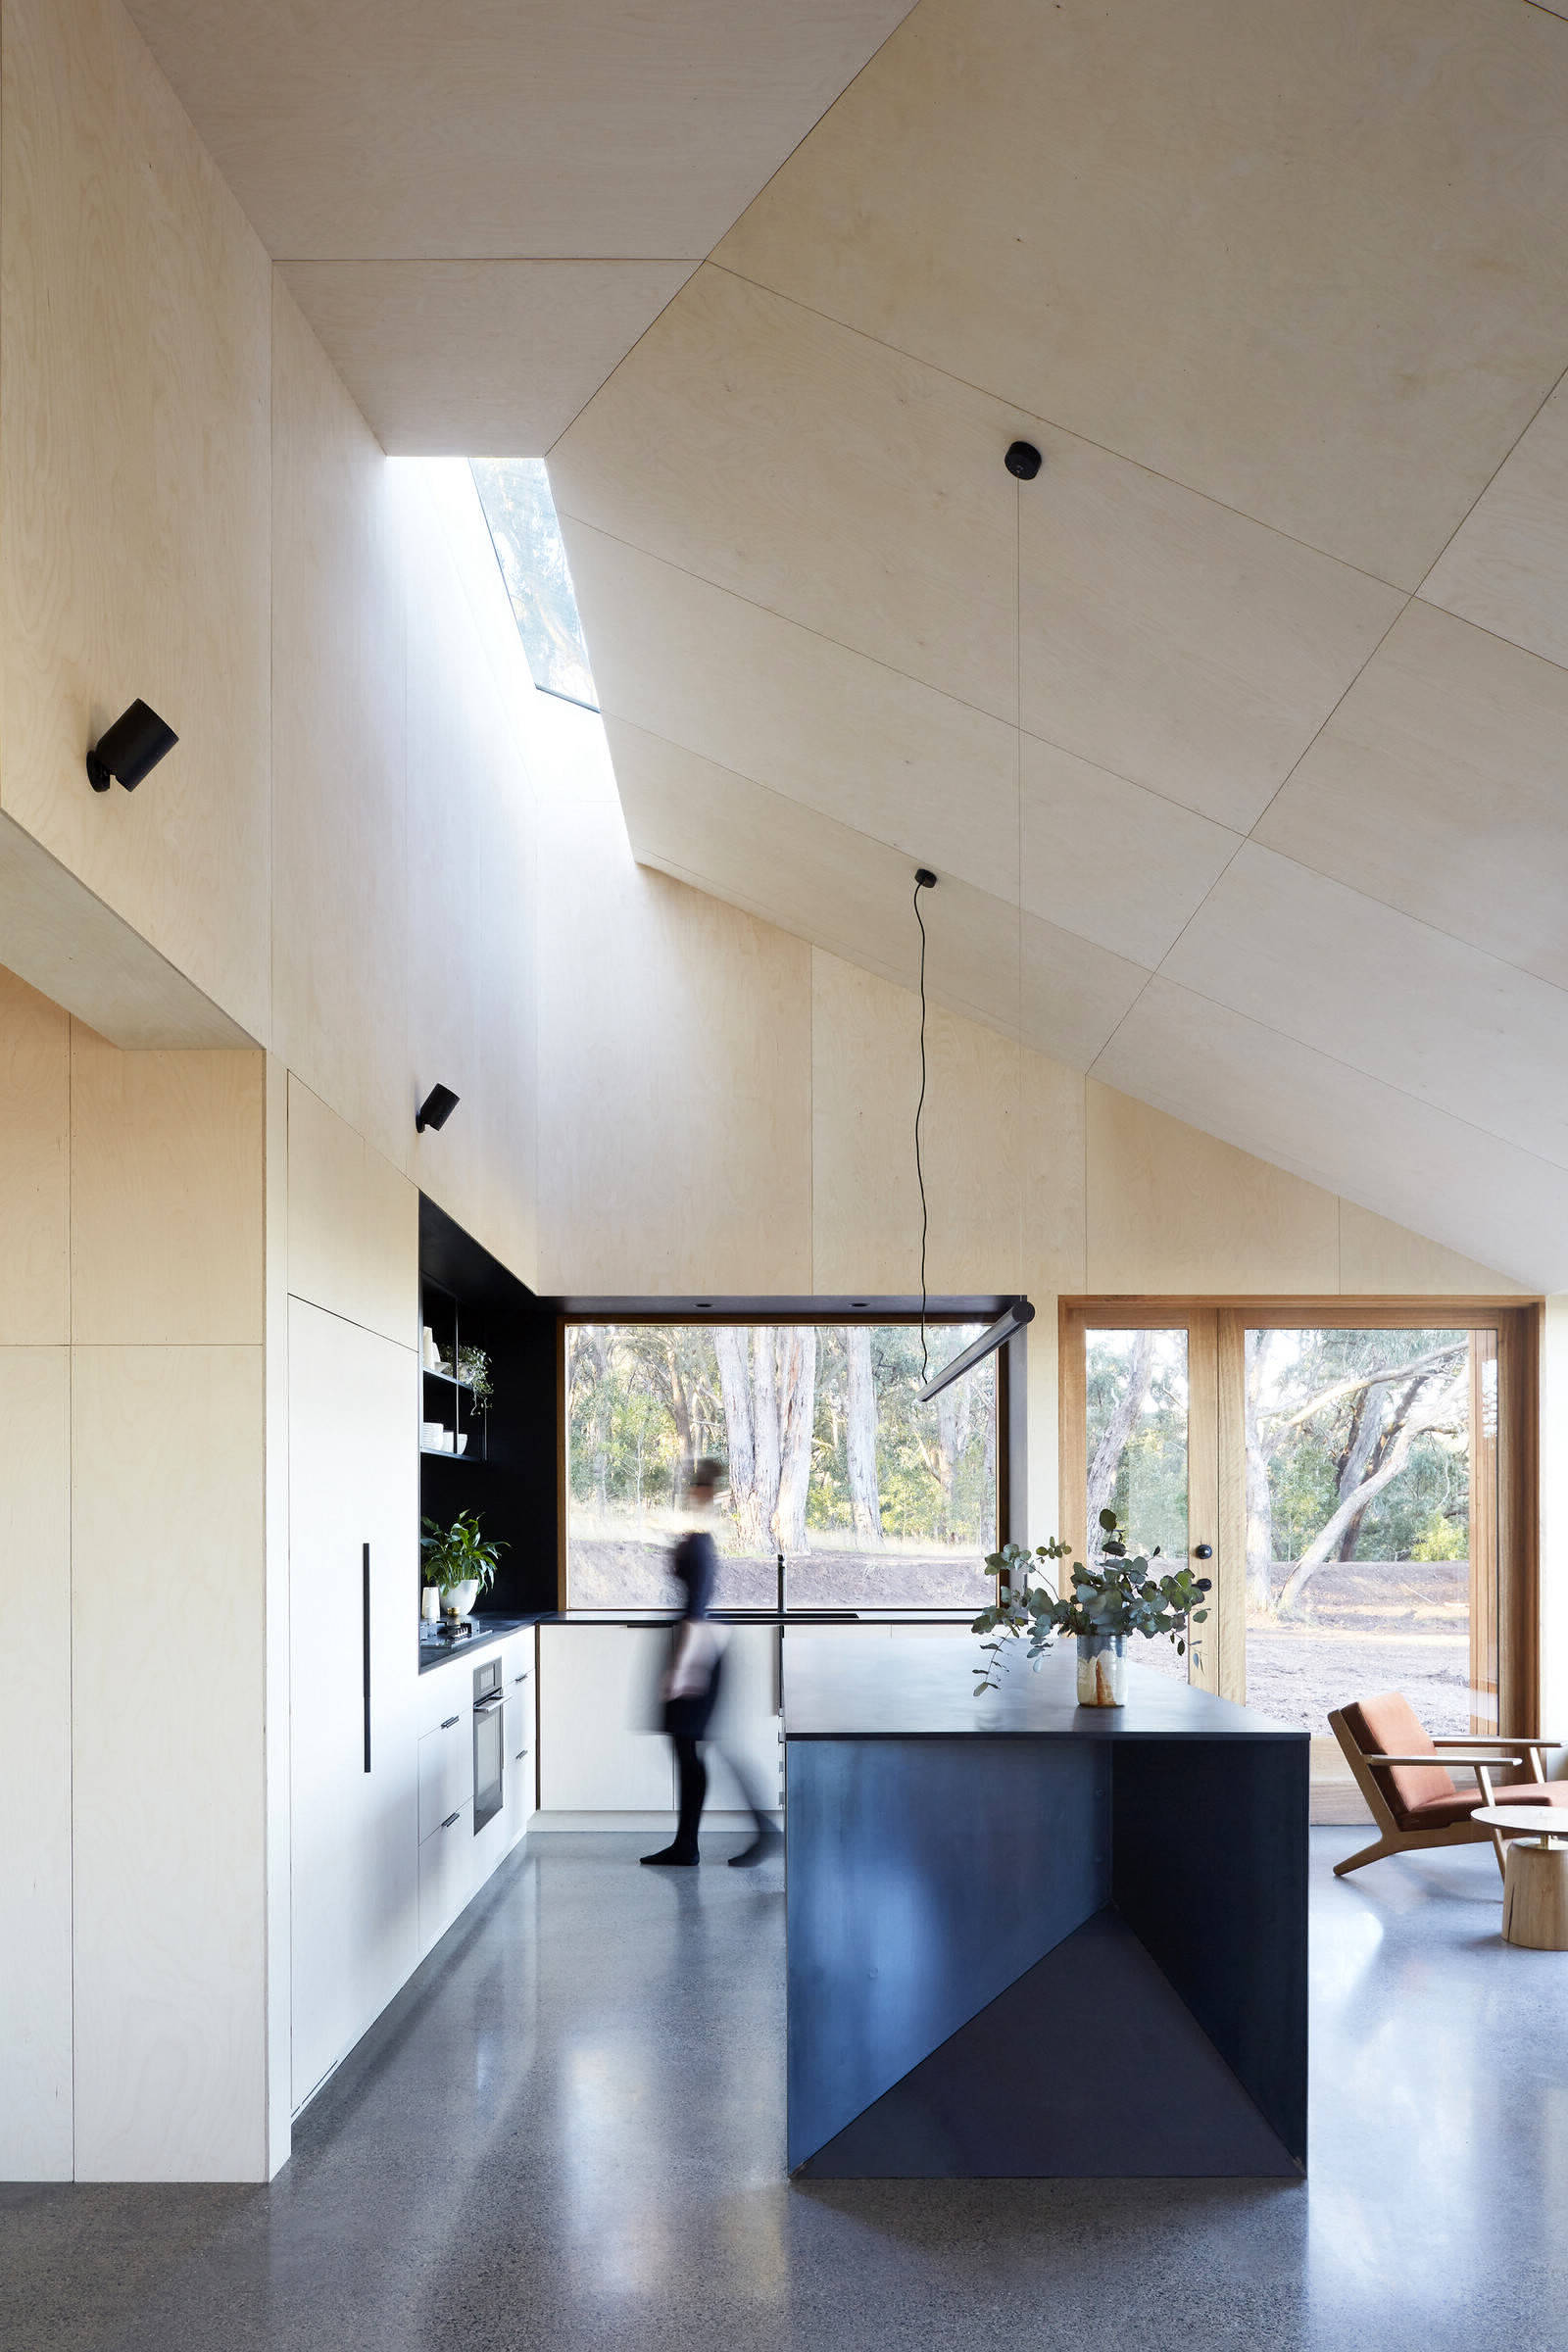 Семейный дом от студии Moloney Architects в Австралии